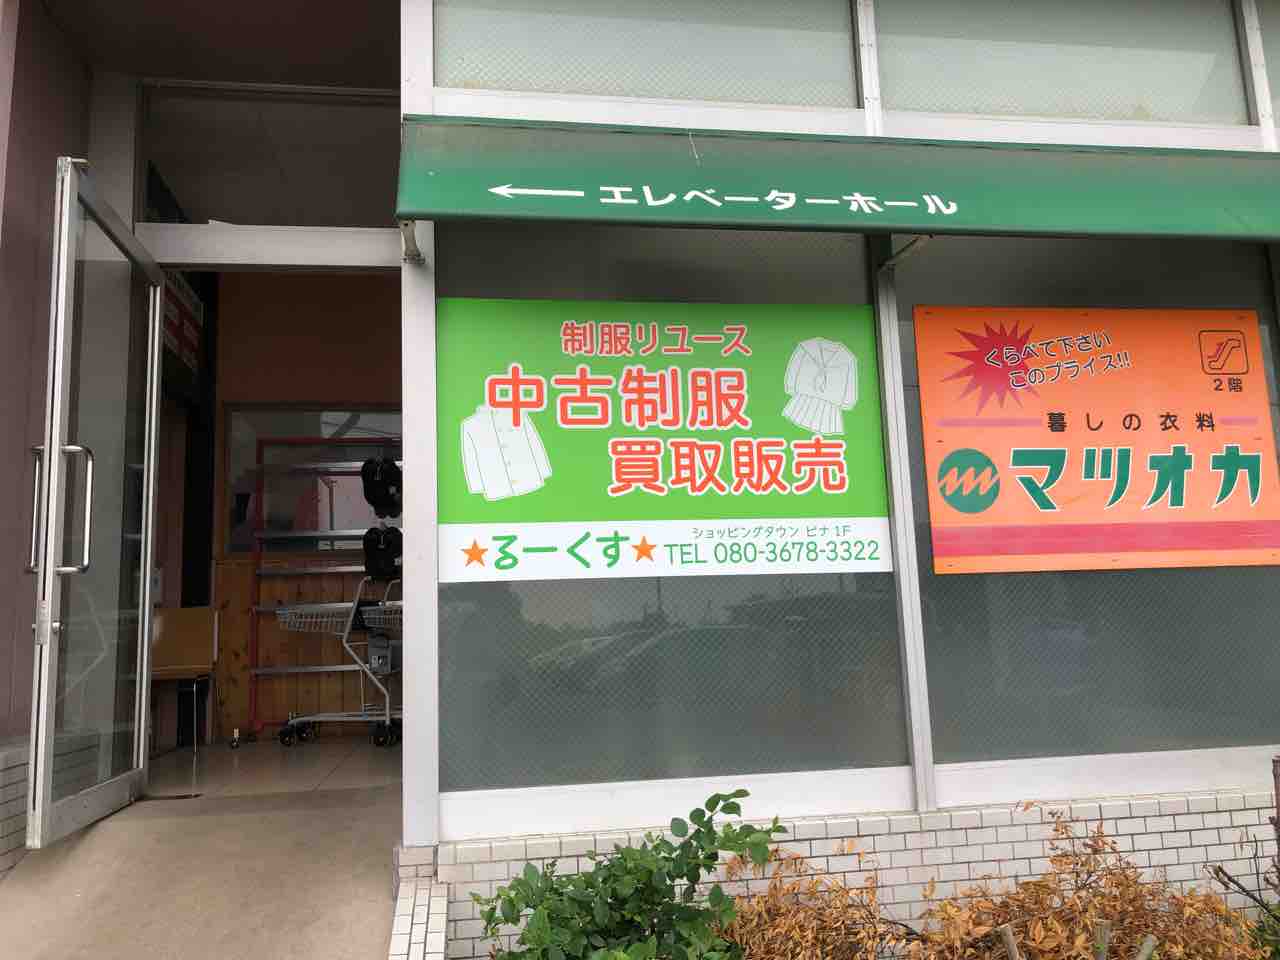 『学生服リサイクル ★るーくす★ 江南店』店舗看板